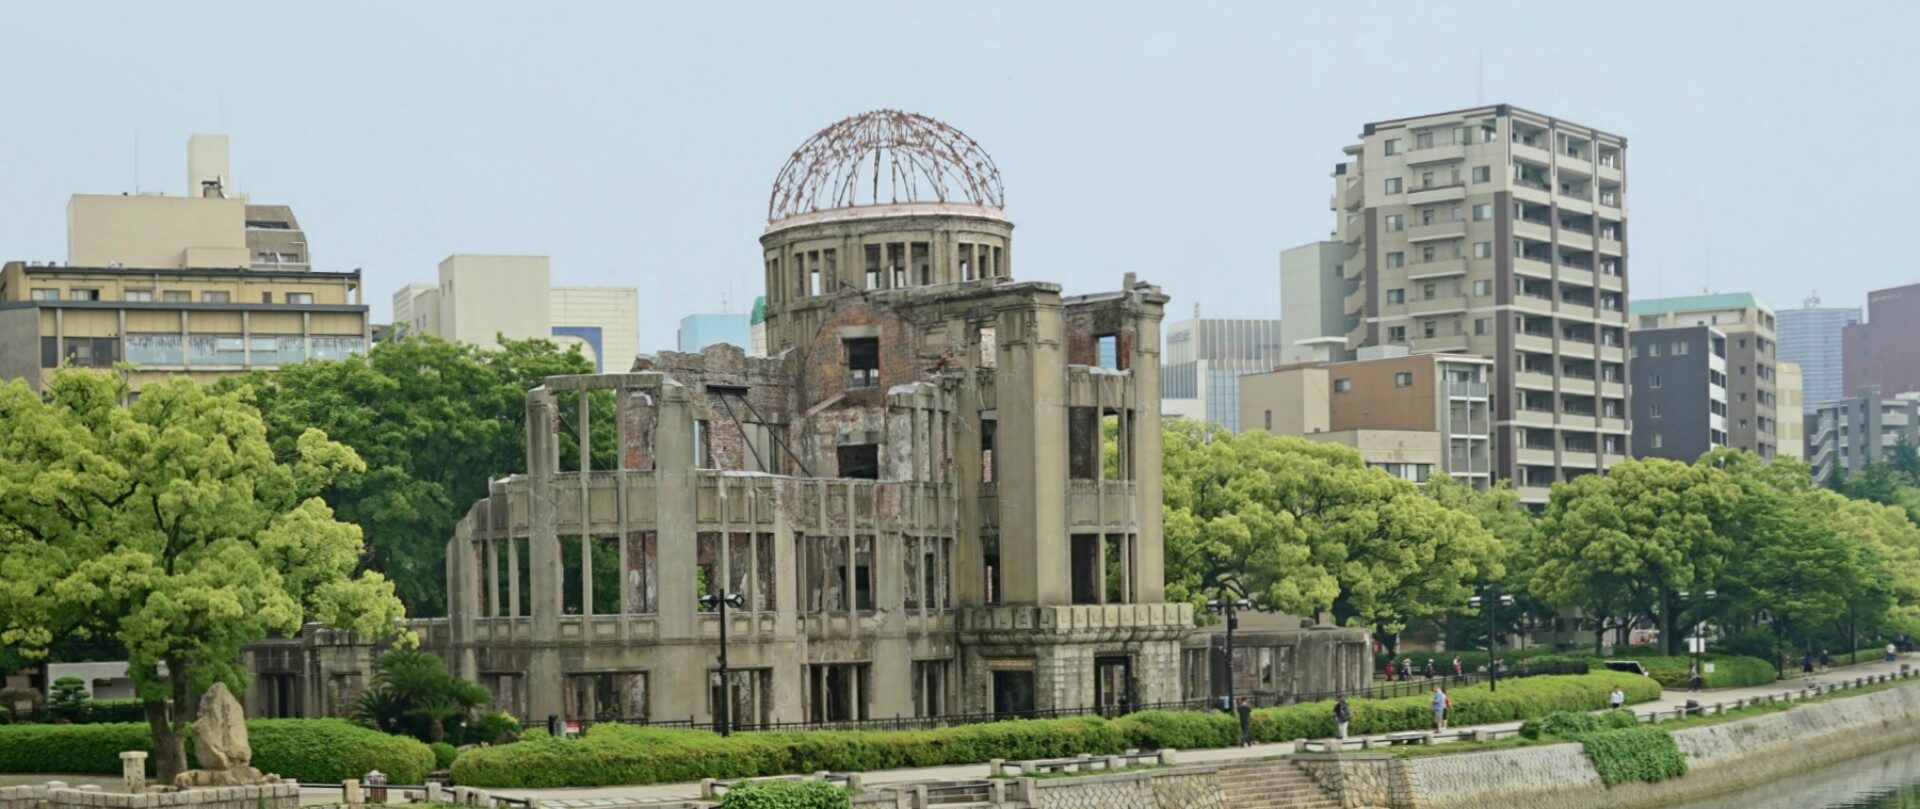 Les représentants des religions asiatiques se rencontreront à Hiroshima (Japon), symbole de l'utilisation négative de la technique | © Jean-Pierre Dalbéra/Flickr/CC BY 2.0